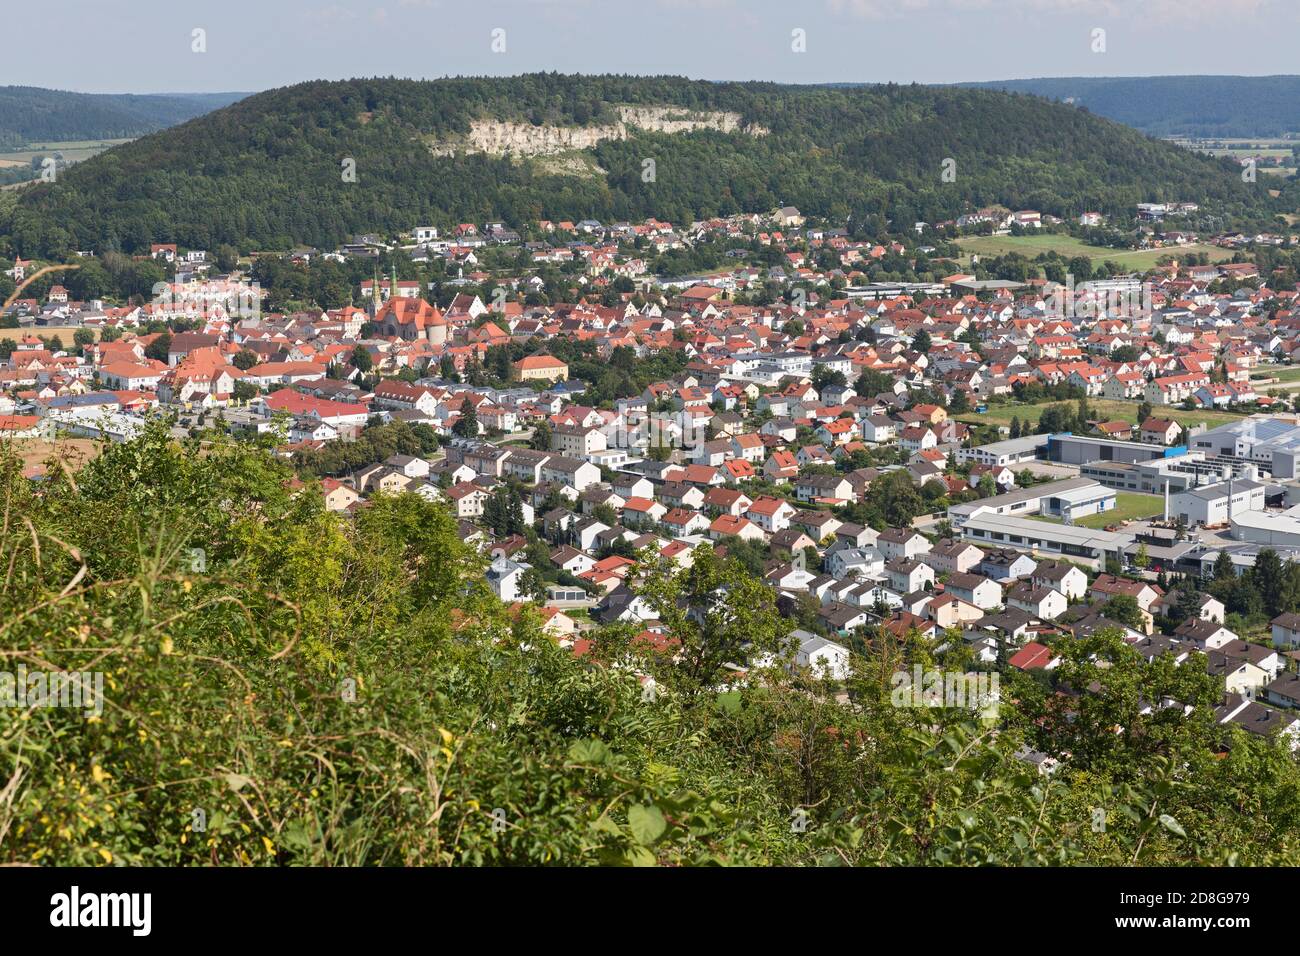 Beilngries, Stadtansicht, Kirche, Wohngebiet, Industriegebiet, Landschaft Stock Photo